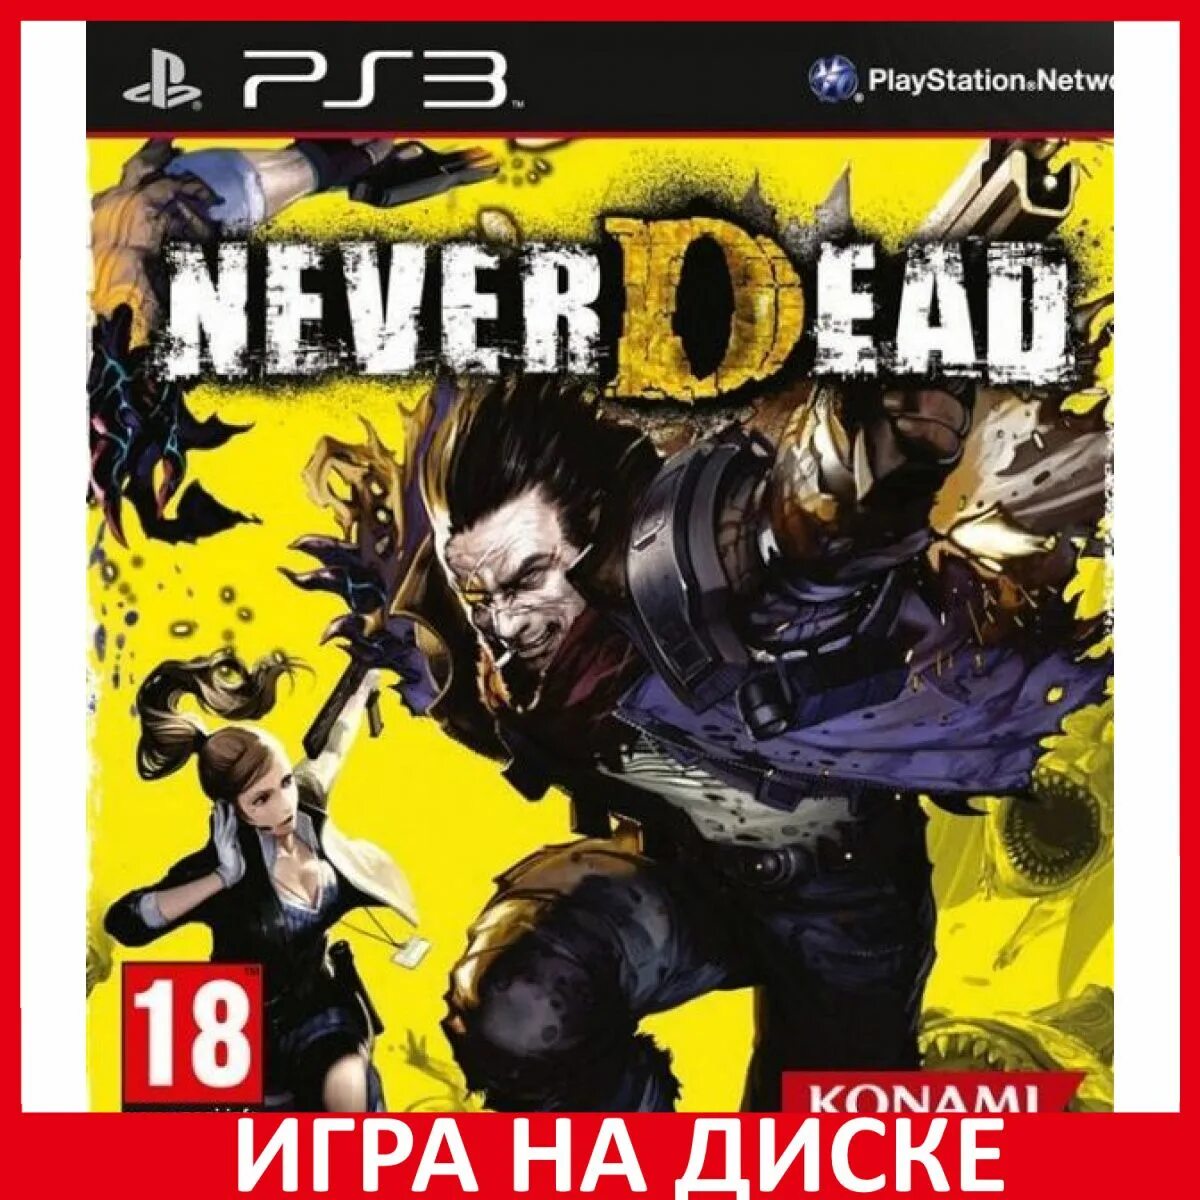 NEVERDEAD ps3 оружие. NEVERDEAD Xbox 360 обложка. NEVERDEAD ps3 Cover. Ps3 игры.